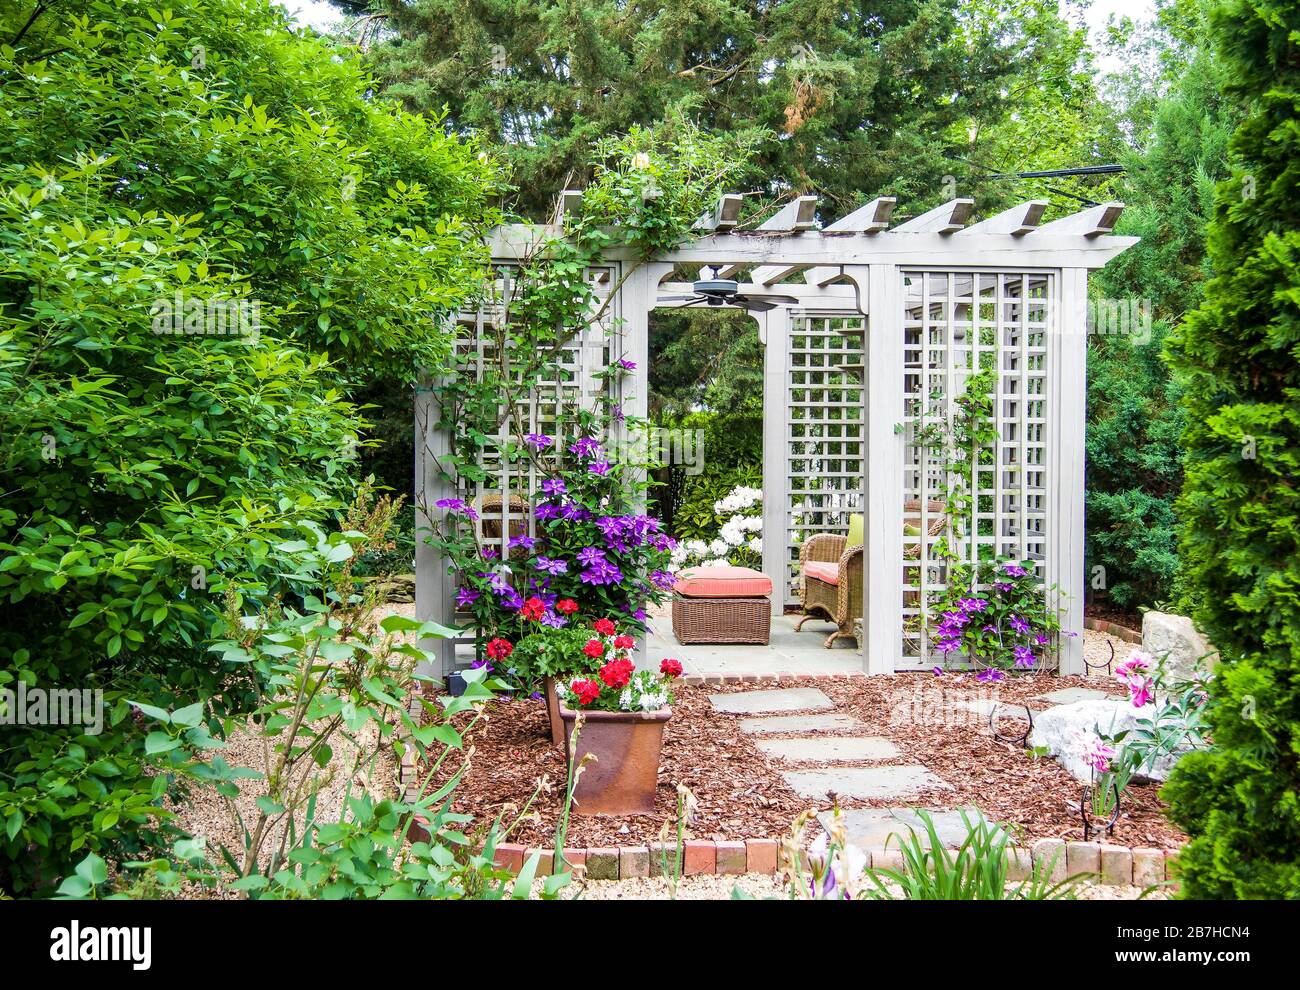 Pergola, outdoor room in flower garden Stock Photo